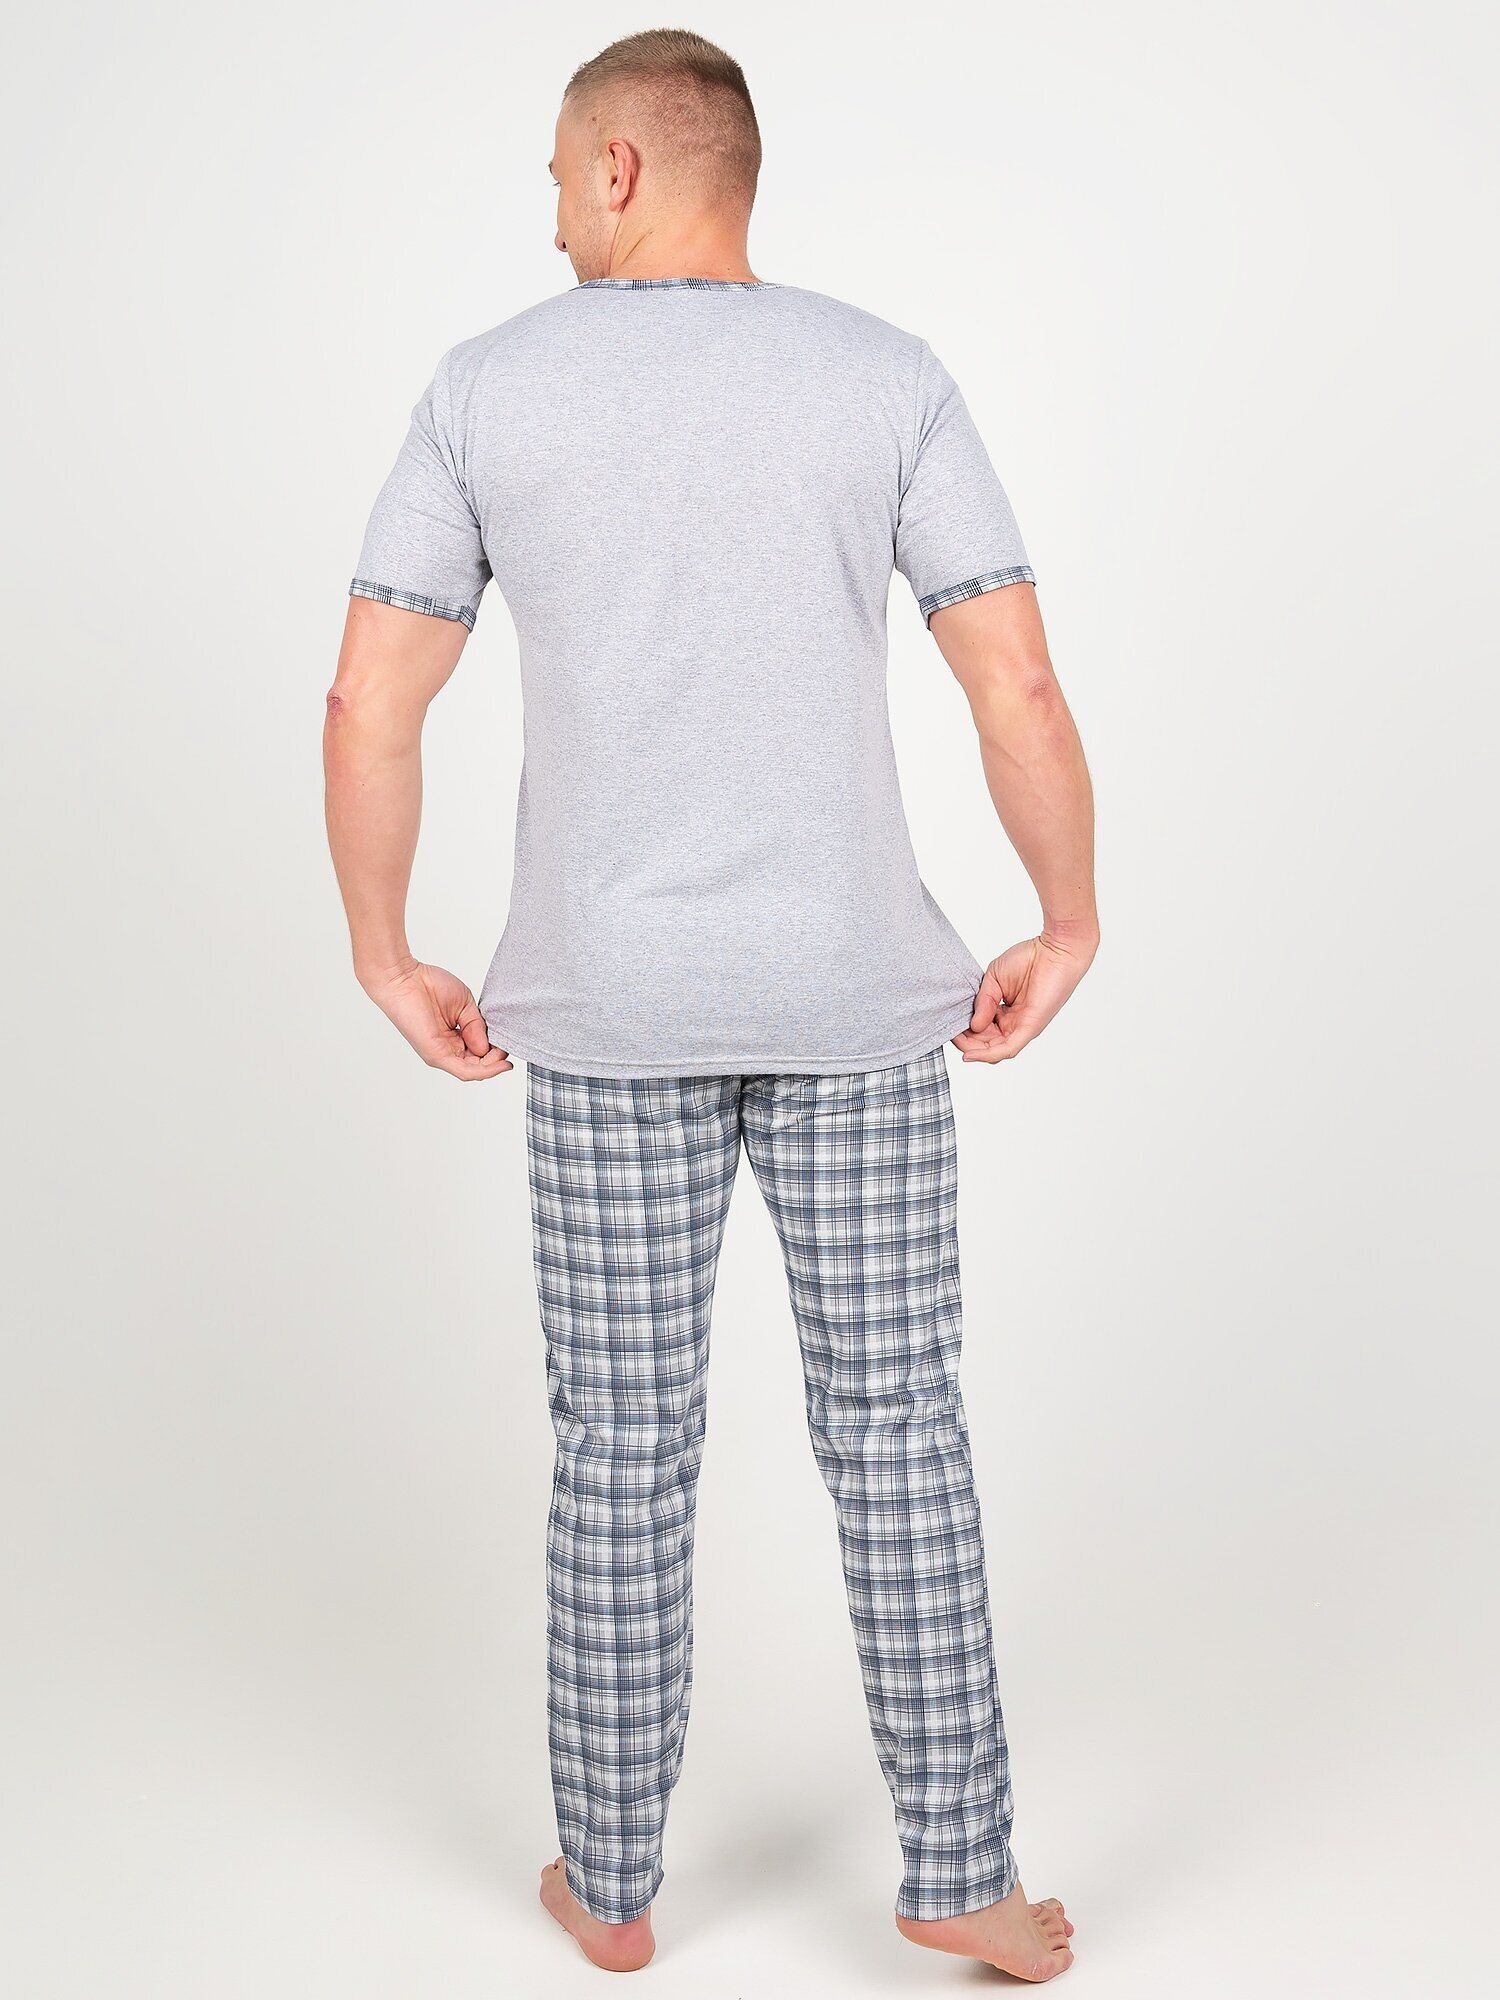 Пижама мужская, Ивелена, серая, 58 размер - фотография № 9